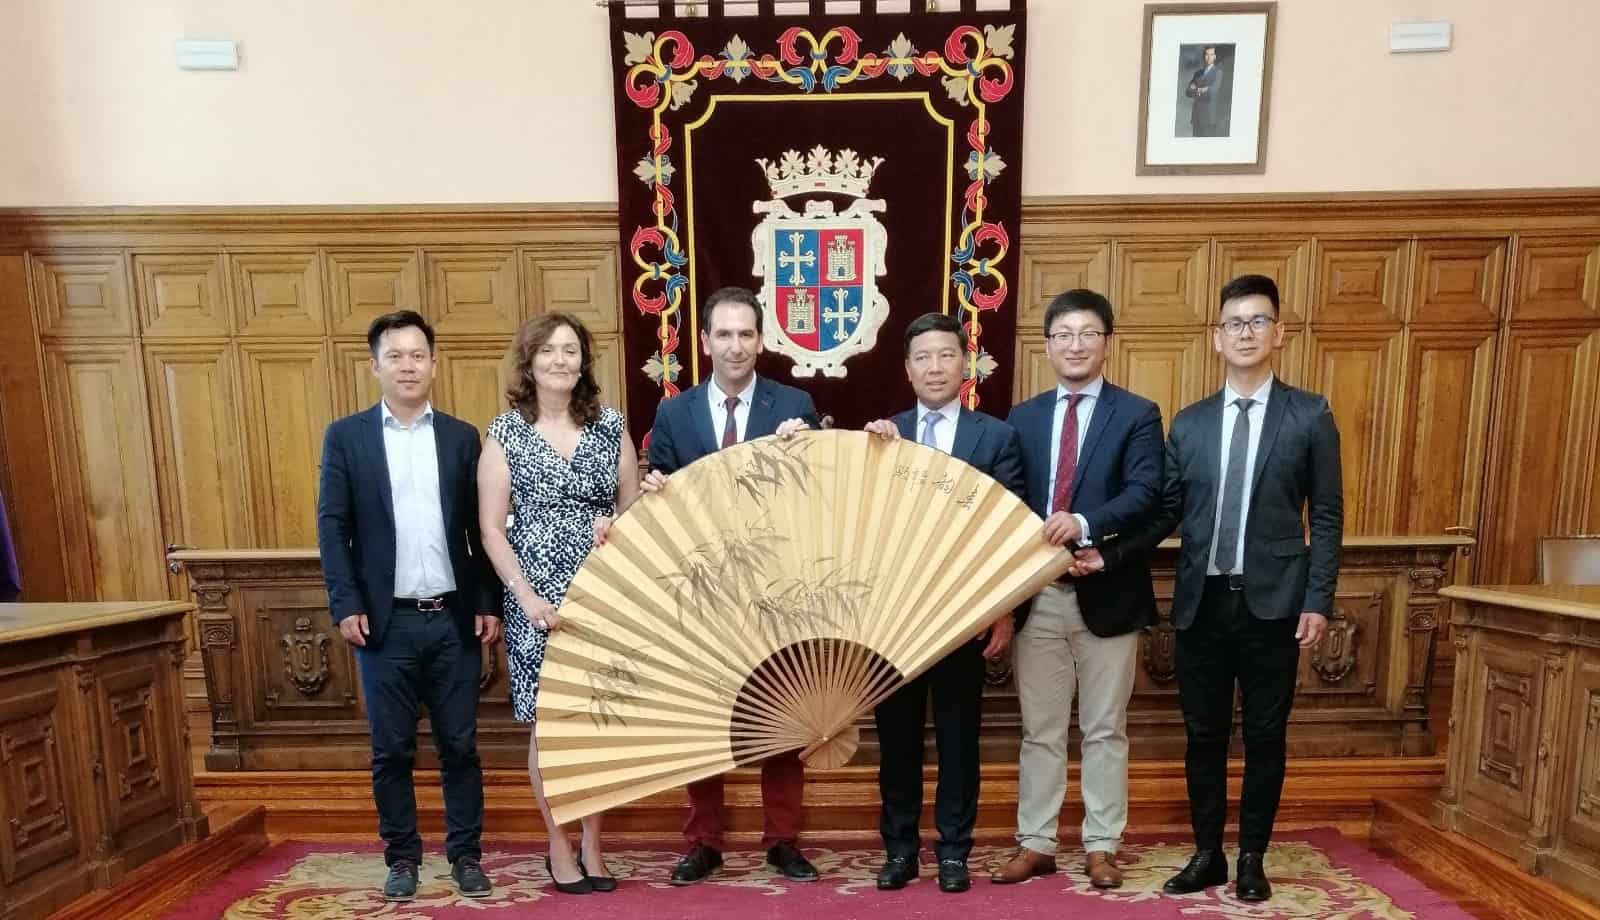 Empresarios chinos muestran interés en poder estrechar lazos culturales y económicos con Palencia